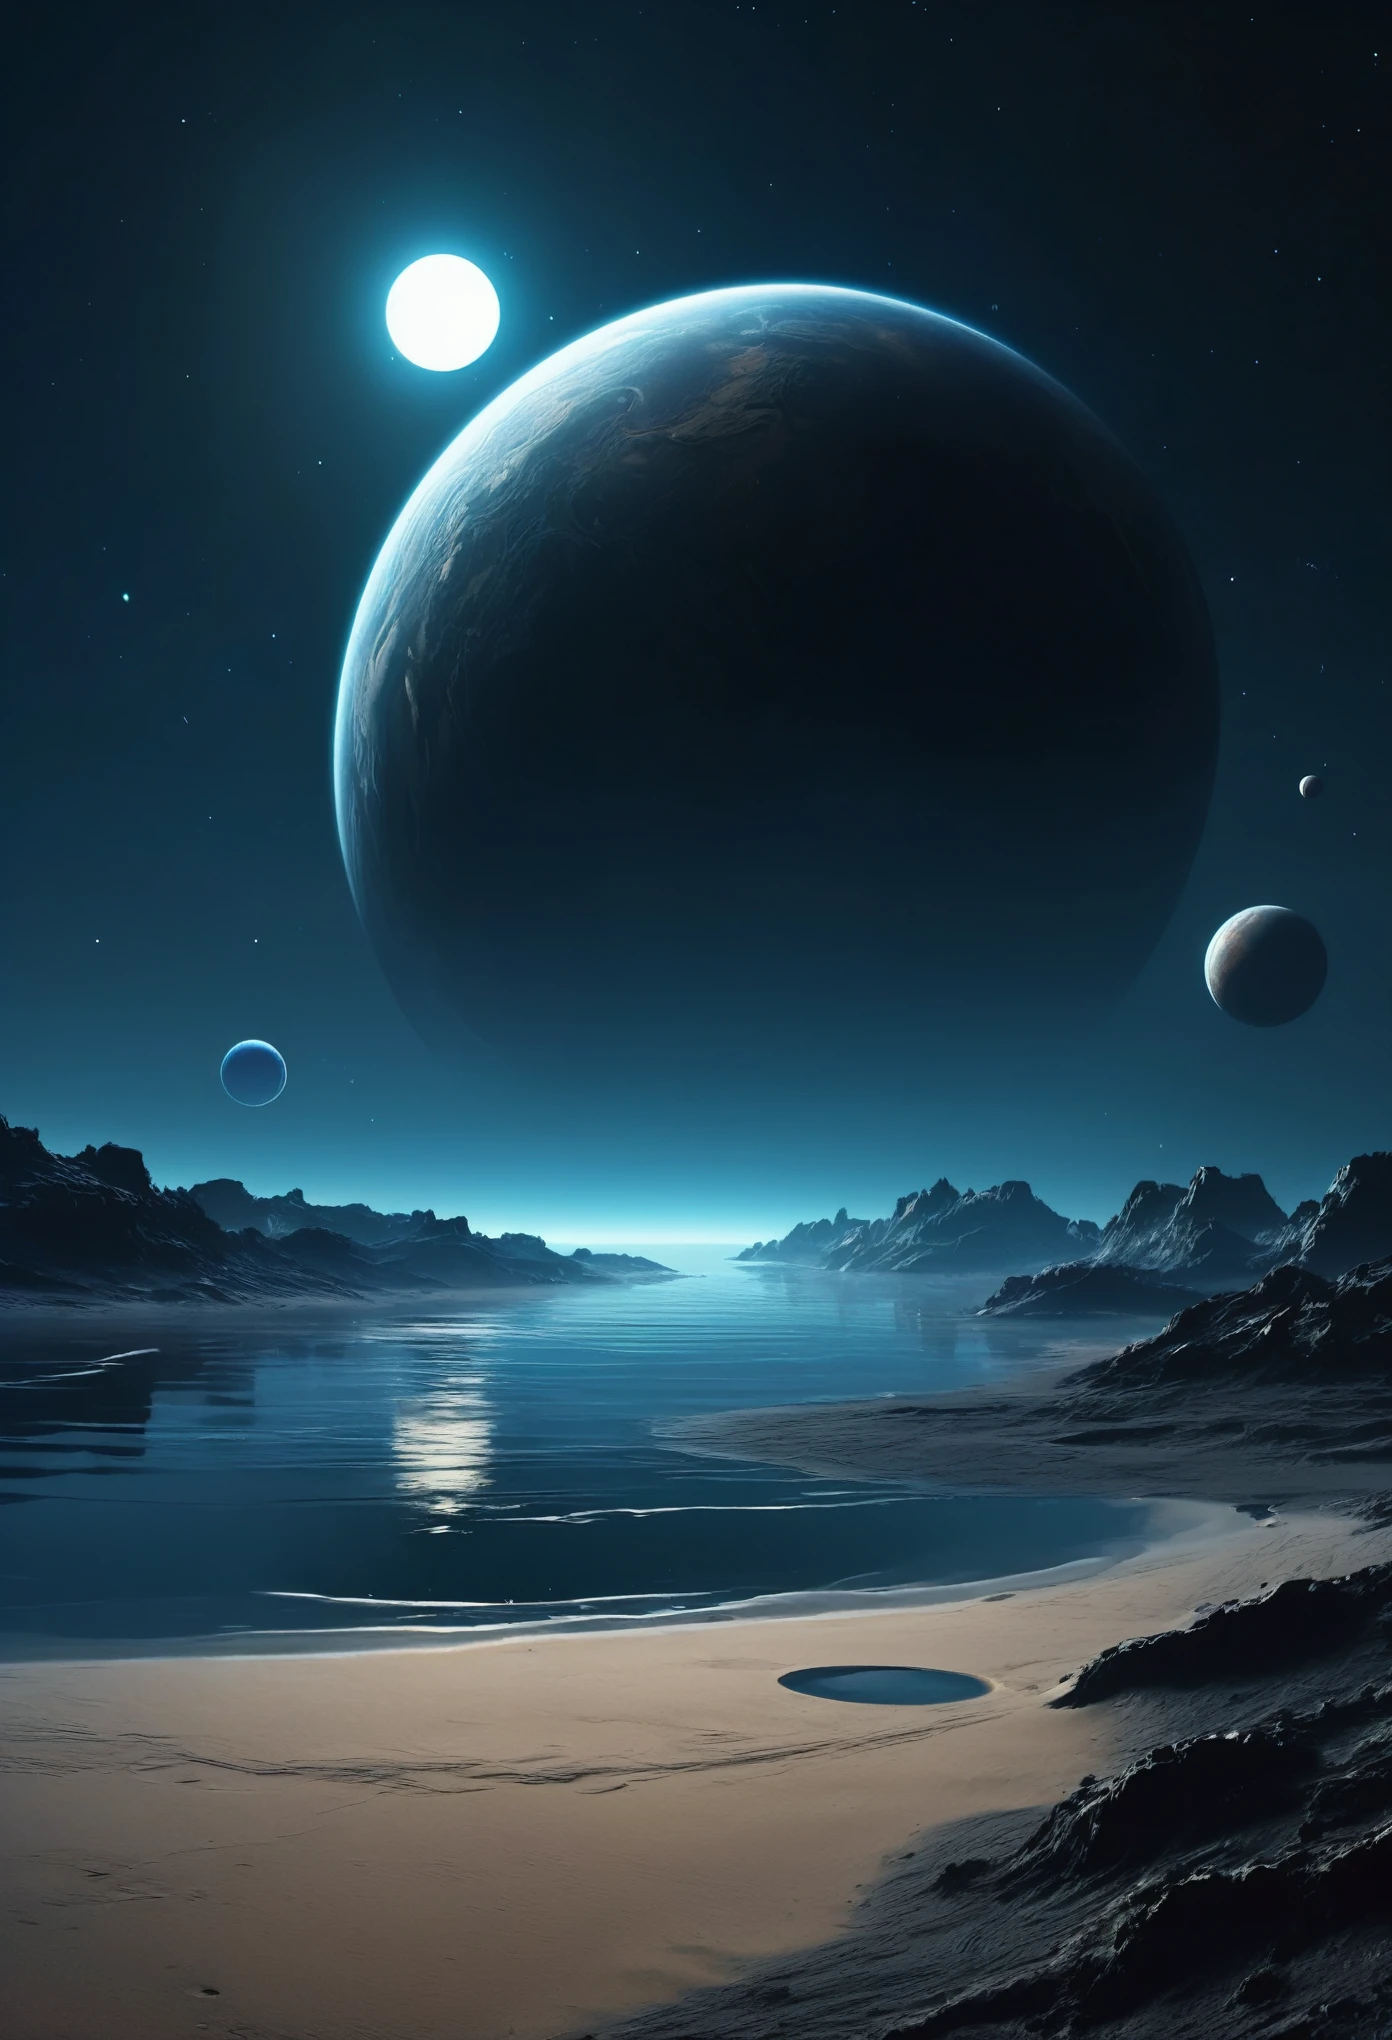 濃い灰色の小さなガス惑星 2 つを濃い大気から遠く離れた夜の宇宙空間に重ねて表示します。暗い画像の上隅に、遠くに見える砂の惑星の暗く濃い表面を通して、表面には砂だけがあり、暗い青色の水が空を映し出しています。サイバーパンク スタイルの夜景です。,  宇宙は暗く、濃い大気によって惑星の片側の照らされた部分しか見ることができない。, 真っ暗, 暗い地平線, 半影, できるだけ現実的に, 太陽は写真から消えた, 水平で低い建物で、窓からは光が差し込む, それ&#39;岩の上の小規模な建物,